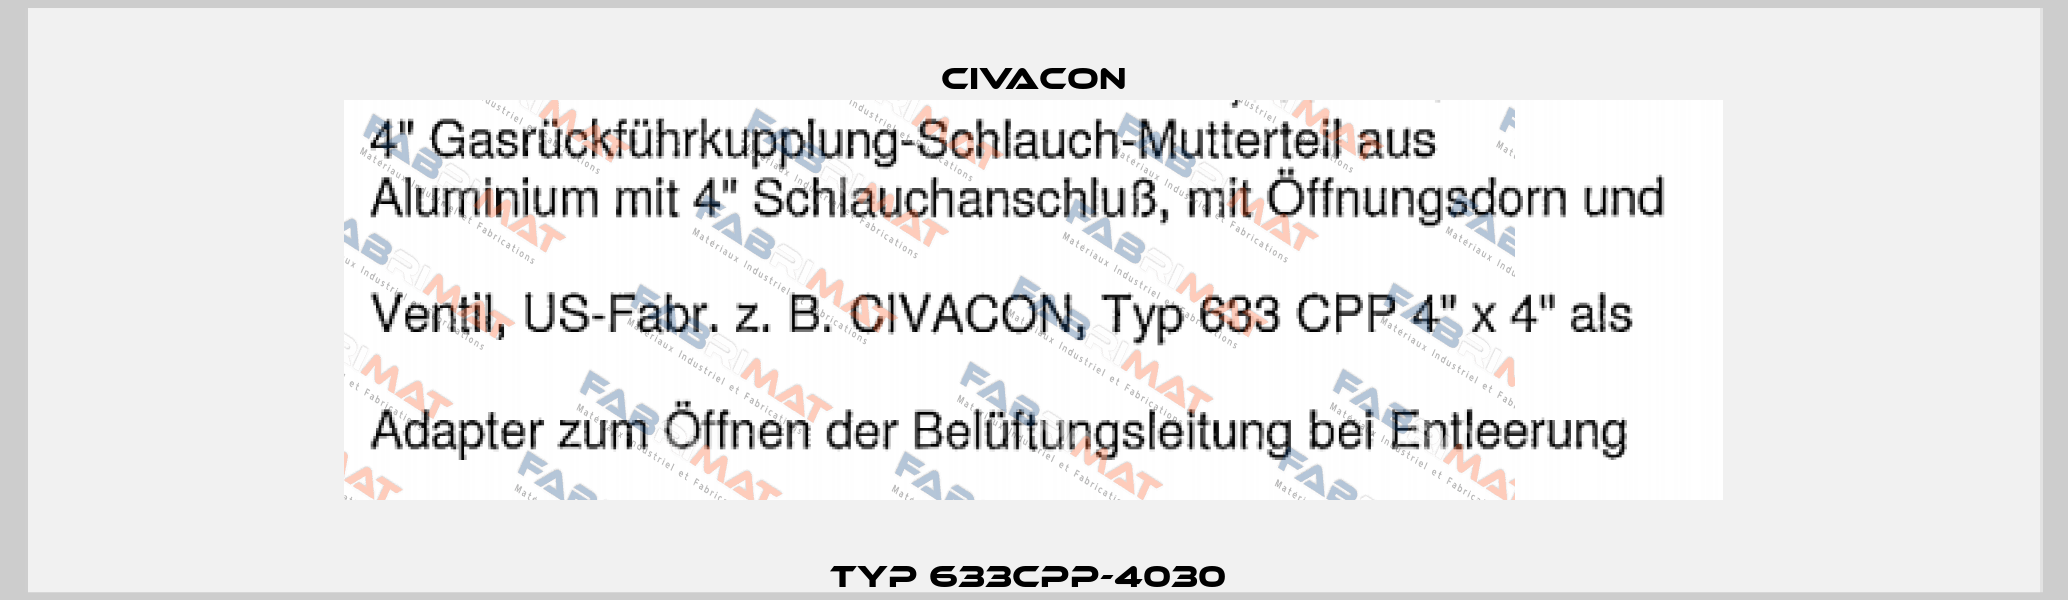 Typ 633CPP-4030  Civacon